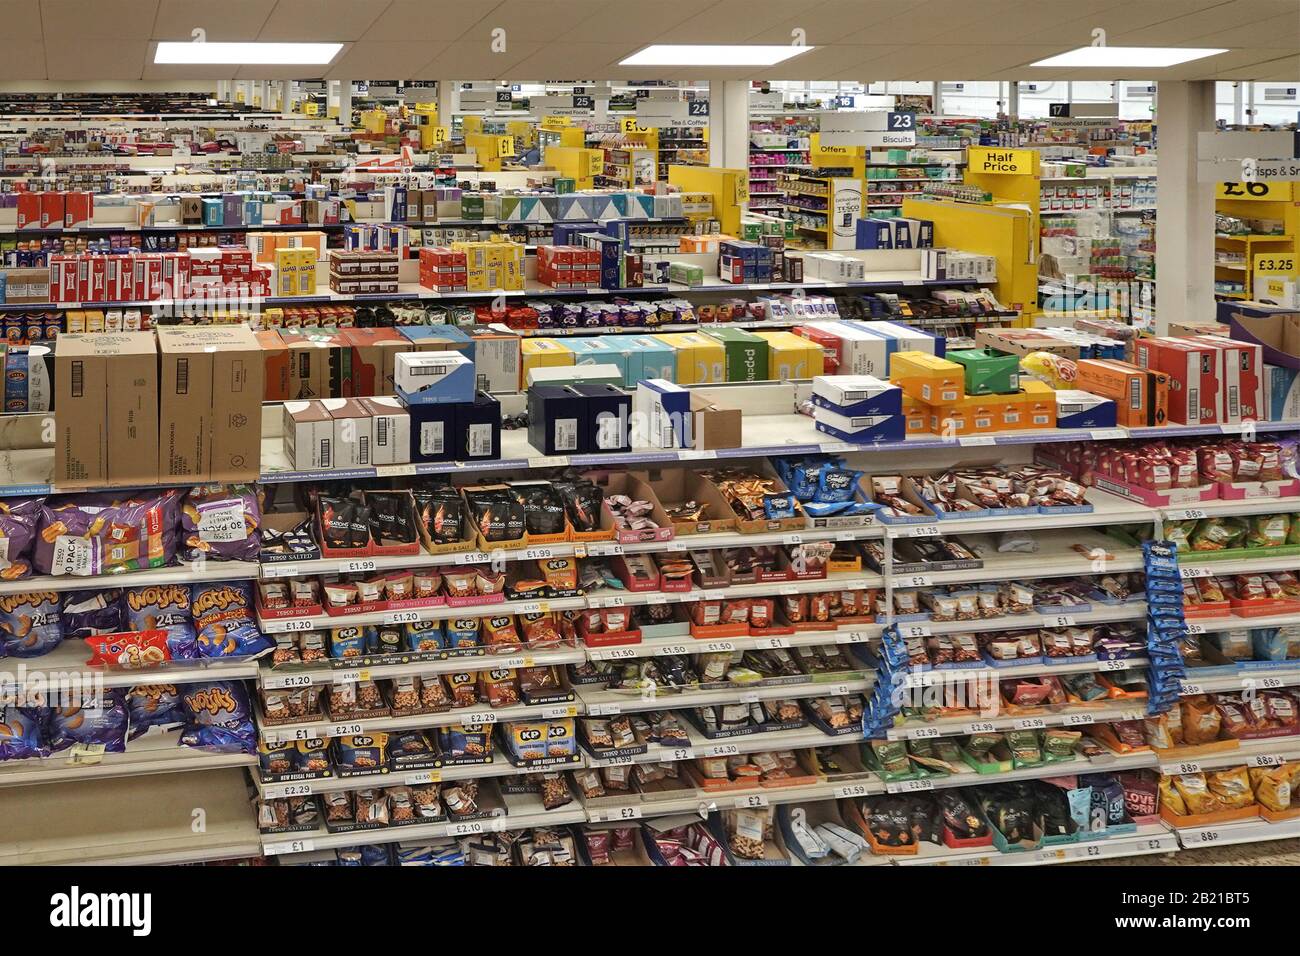 Vue d'emballage de boîte en carton surstock d'étagère supérieure au-dessus des étagères dans les grandes allées de supermarché alimentaire produits à vendre intérieur Londres Angleterre Royaume-Uni Banque D'Images